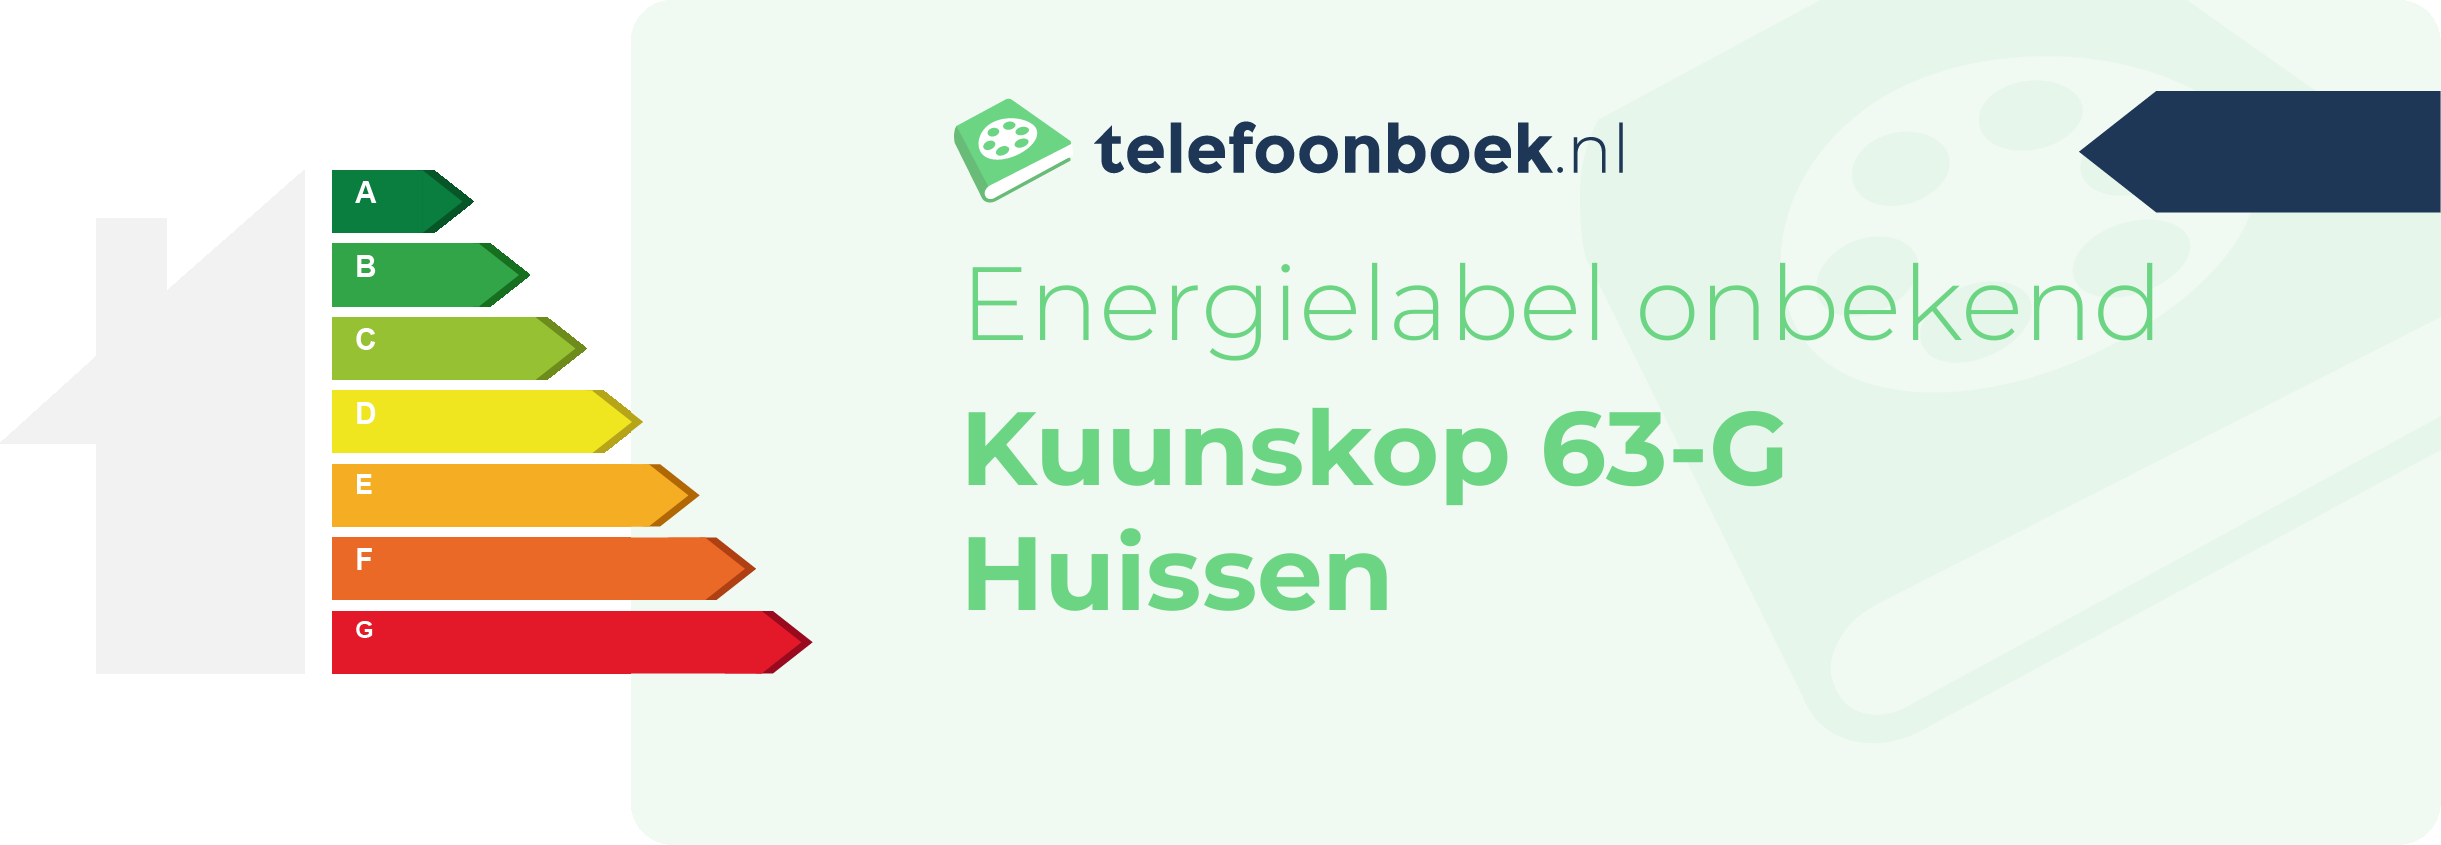 Energielabel Kuunskop 63-G Huissen